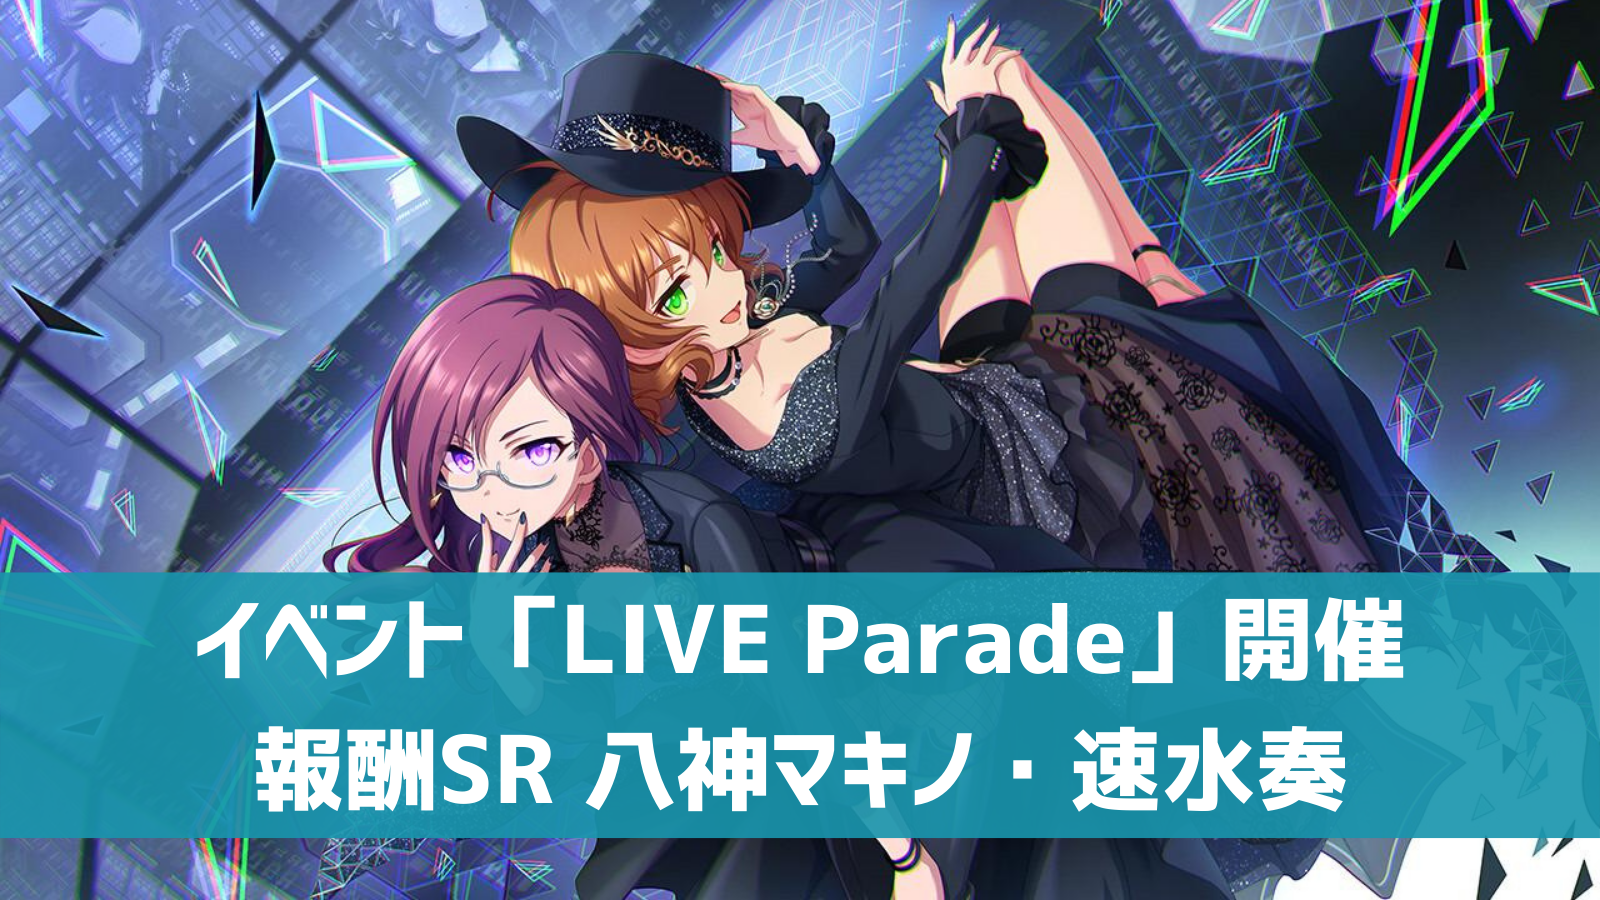 liveparade